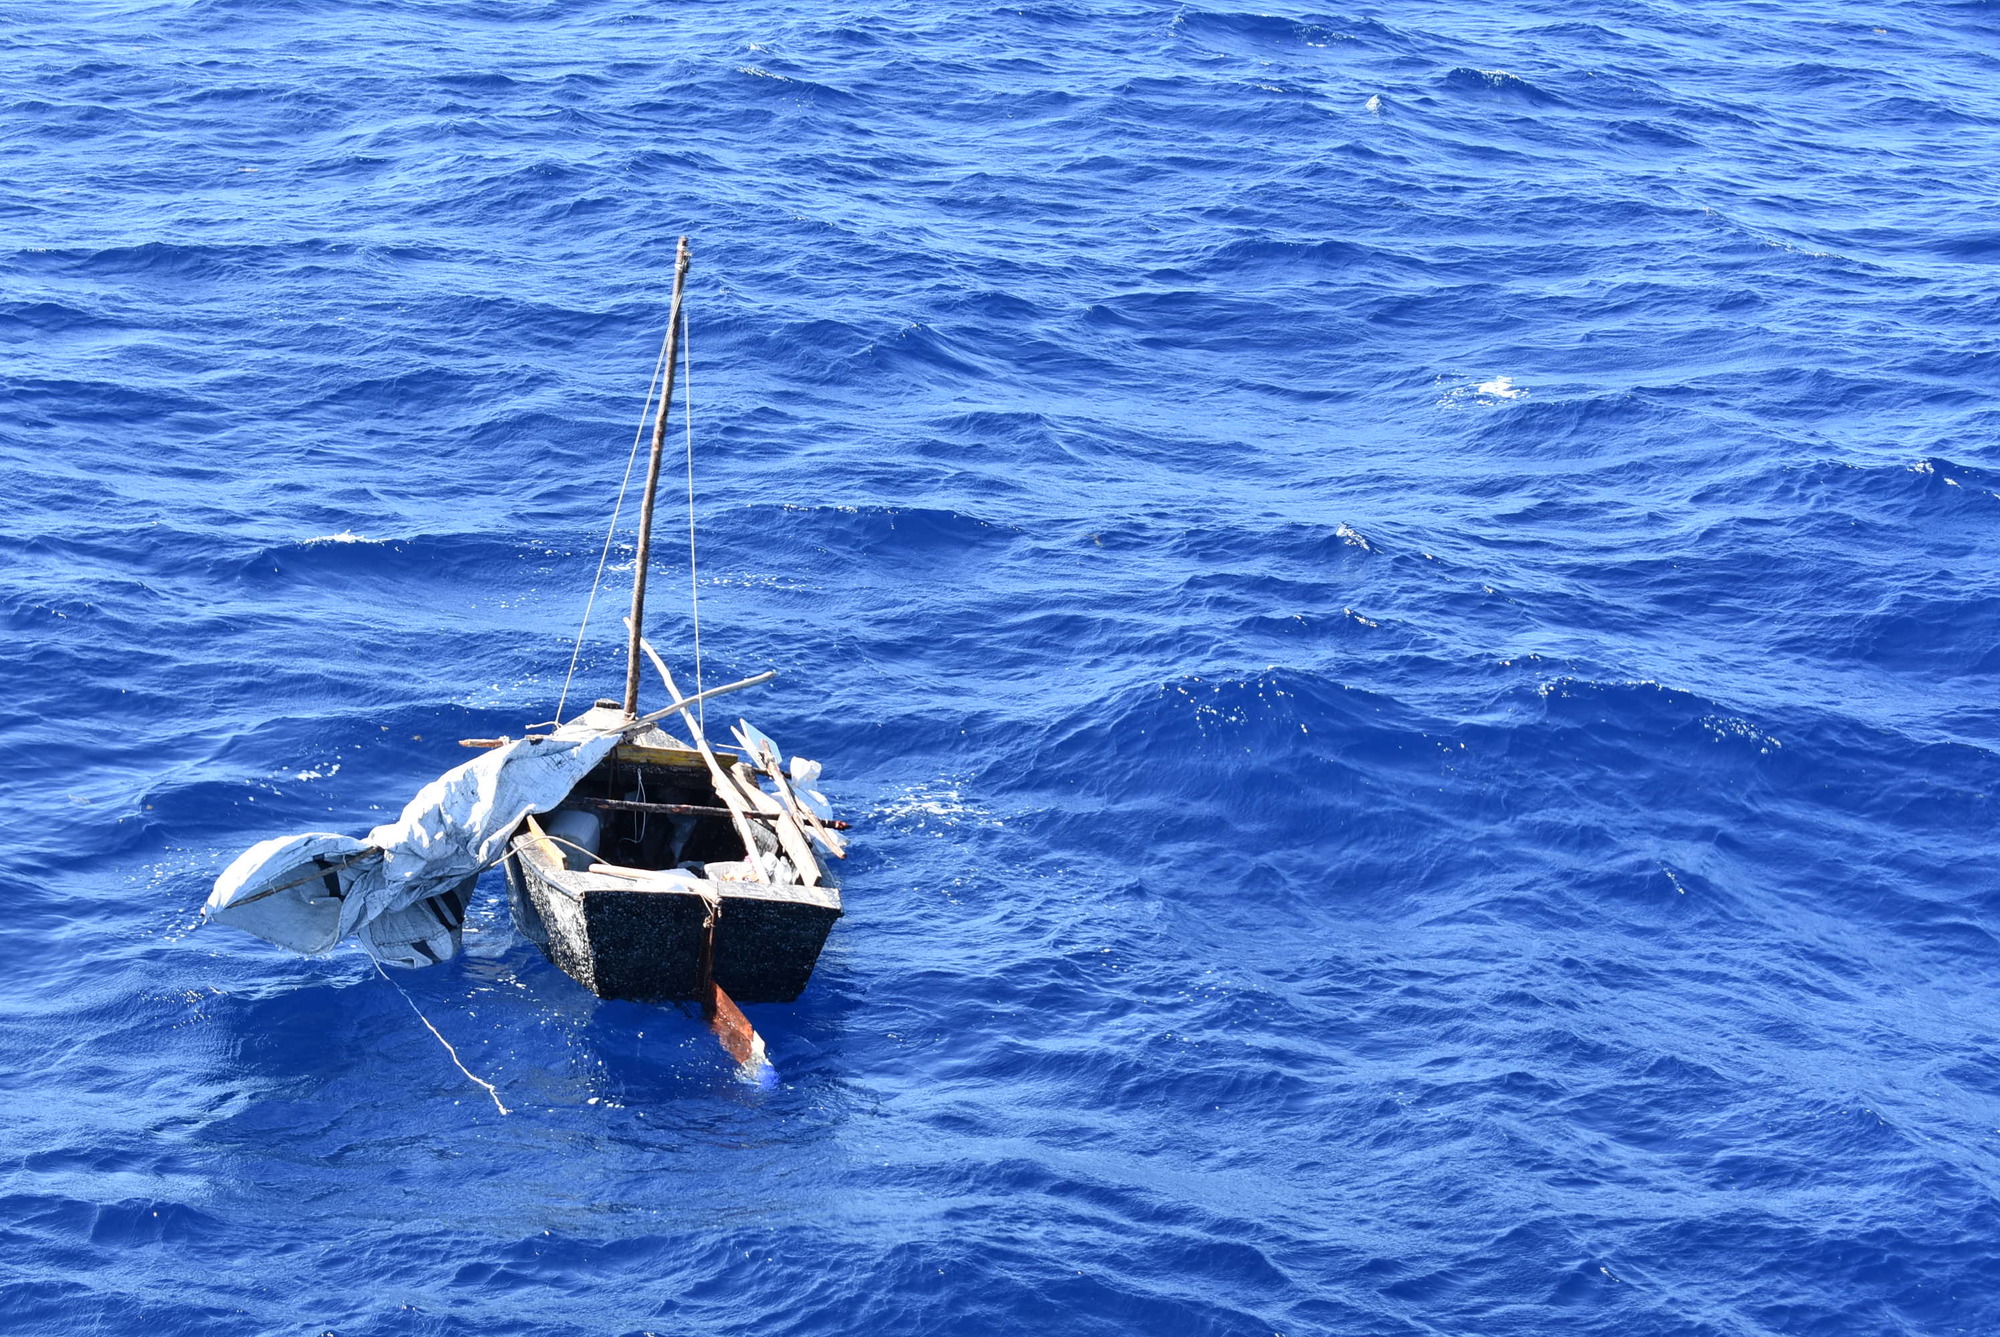 Coast Guard repatriates 3 migrants to Cuba